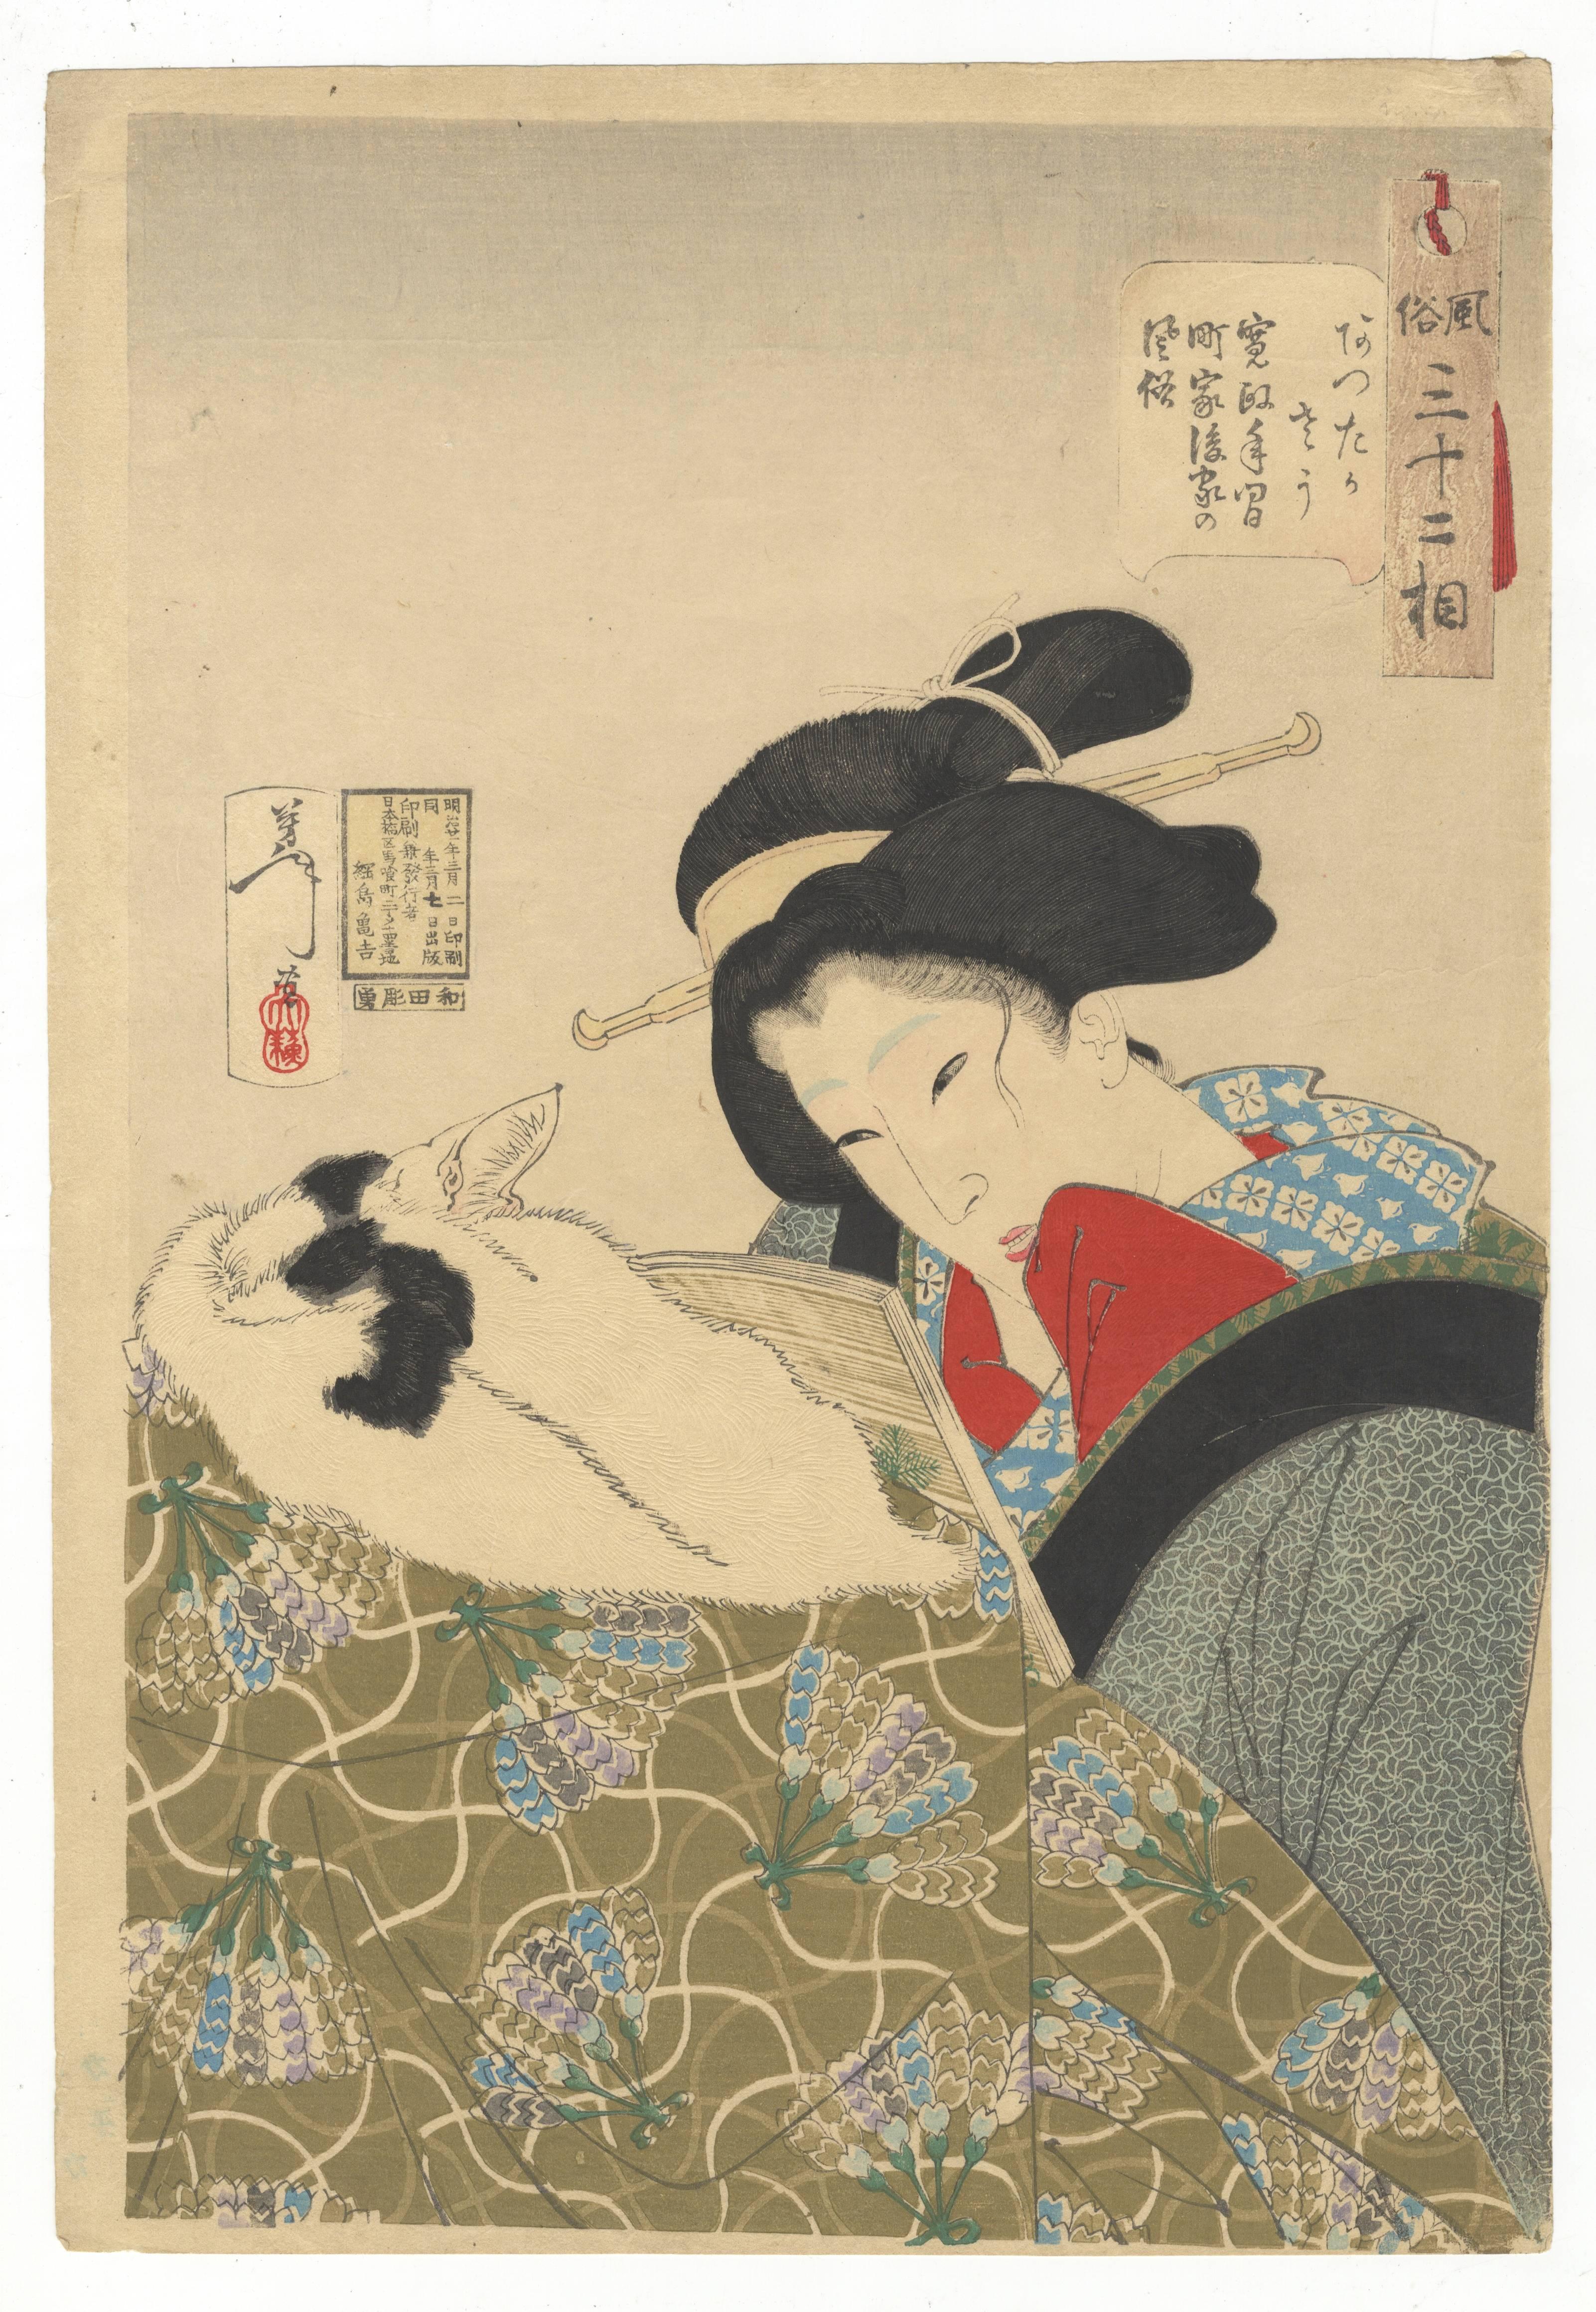 Tsukioka Yoshitoshi Portrait Print - Yoshitoshi Tsukioka, Cat, Japanese Woodblock Print, Ukiyo-e, Beauty, Kimono